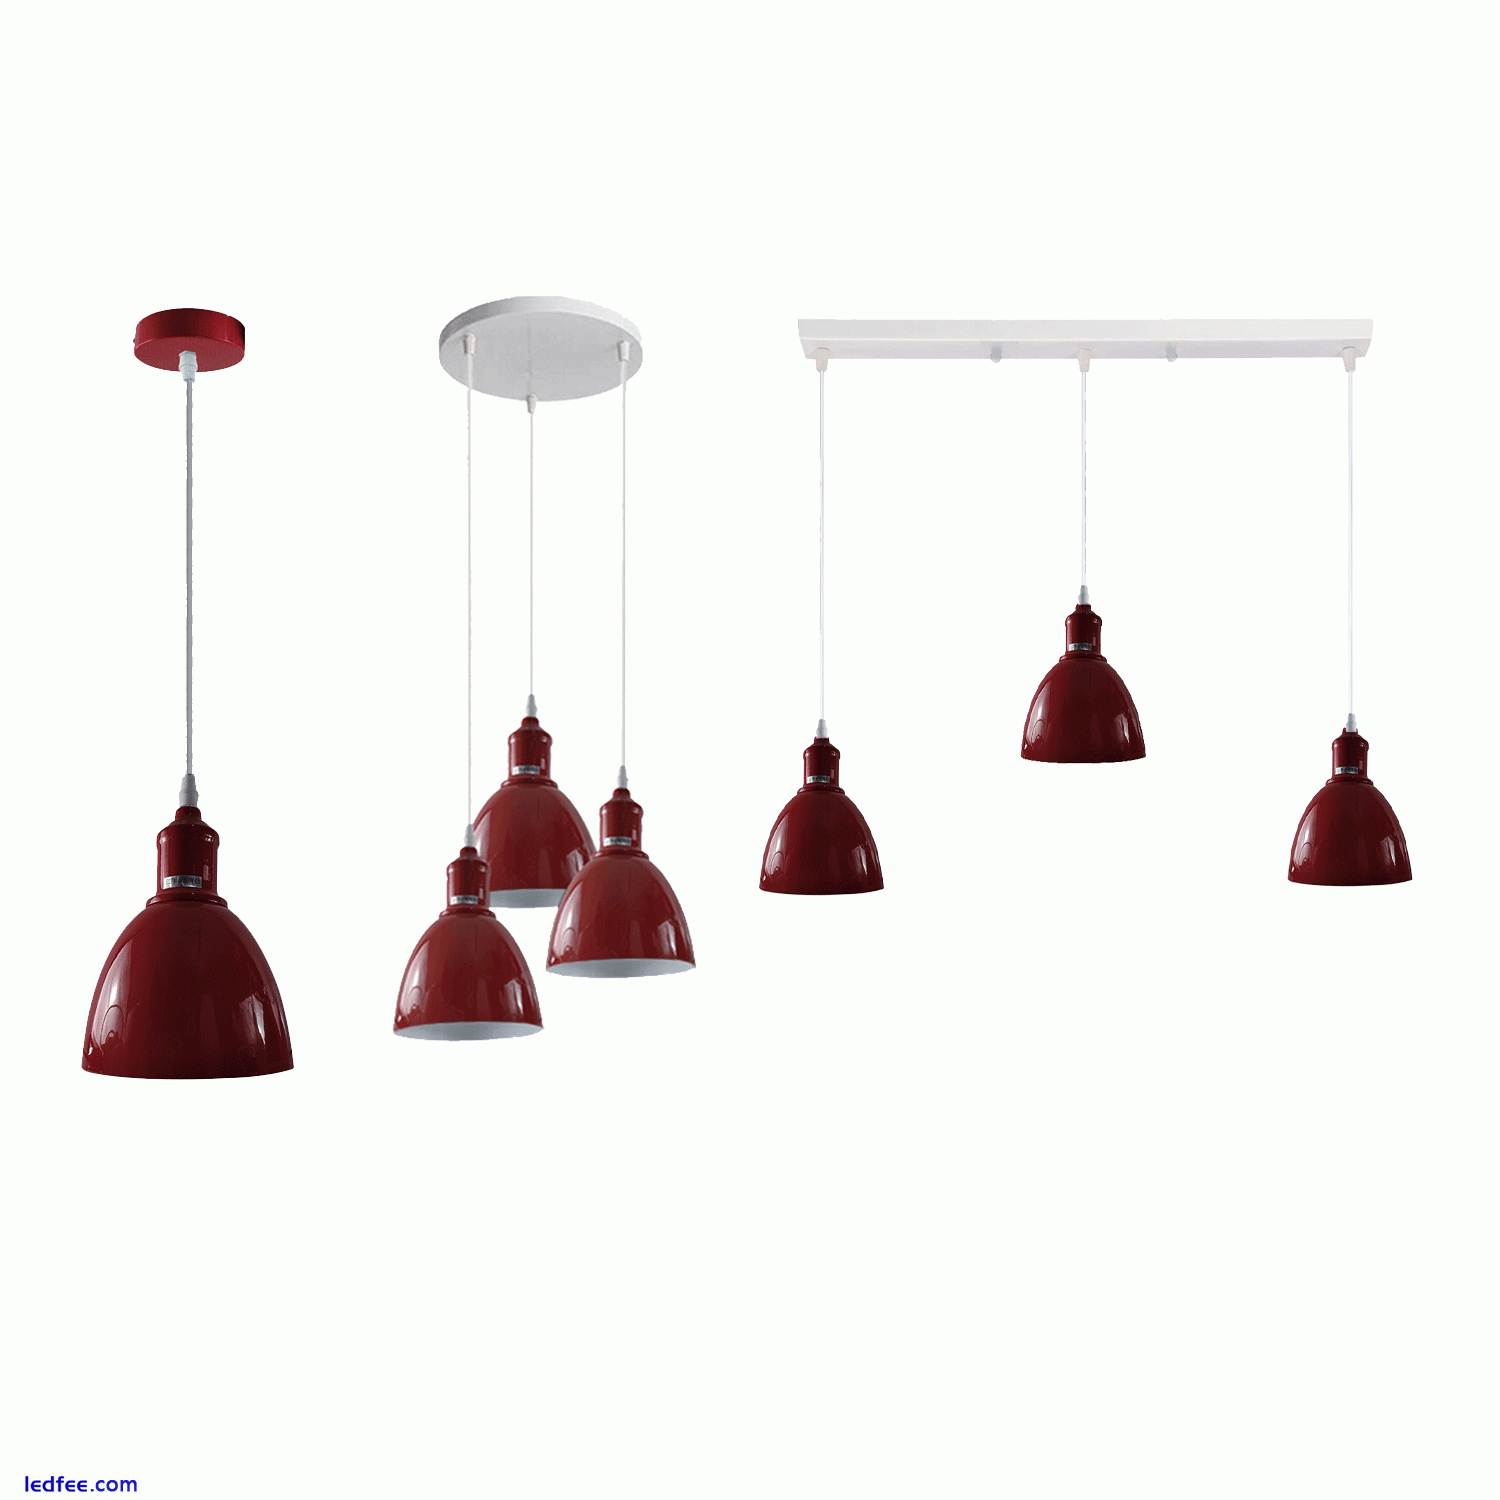 Vintage Industrial Pendant Light Modern Hanging Retro Lamp LED Ceiling Lights UK 3 